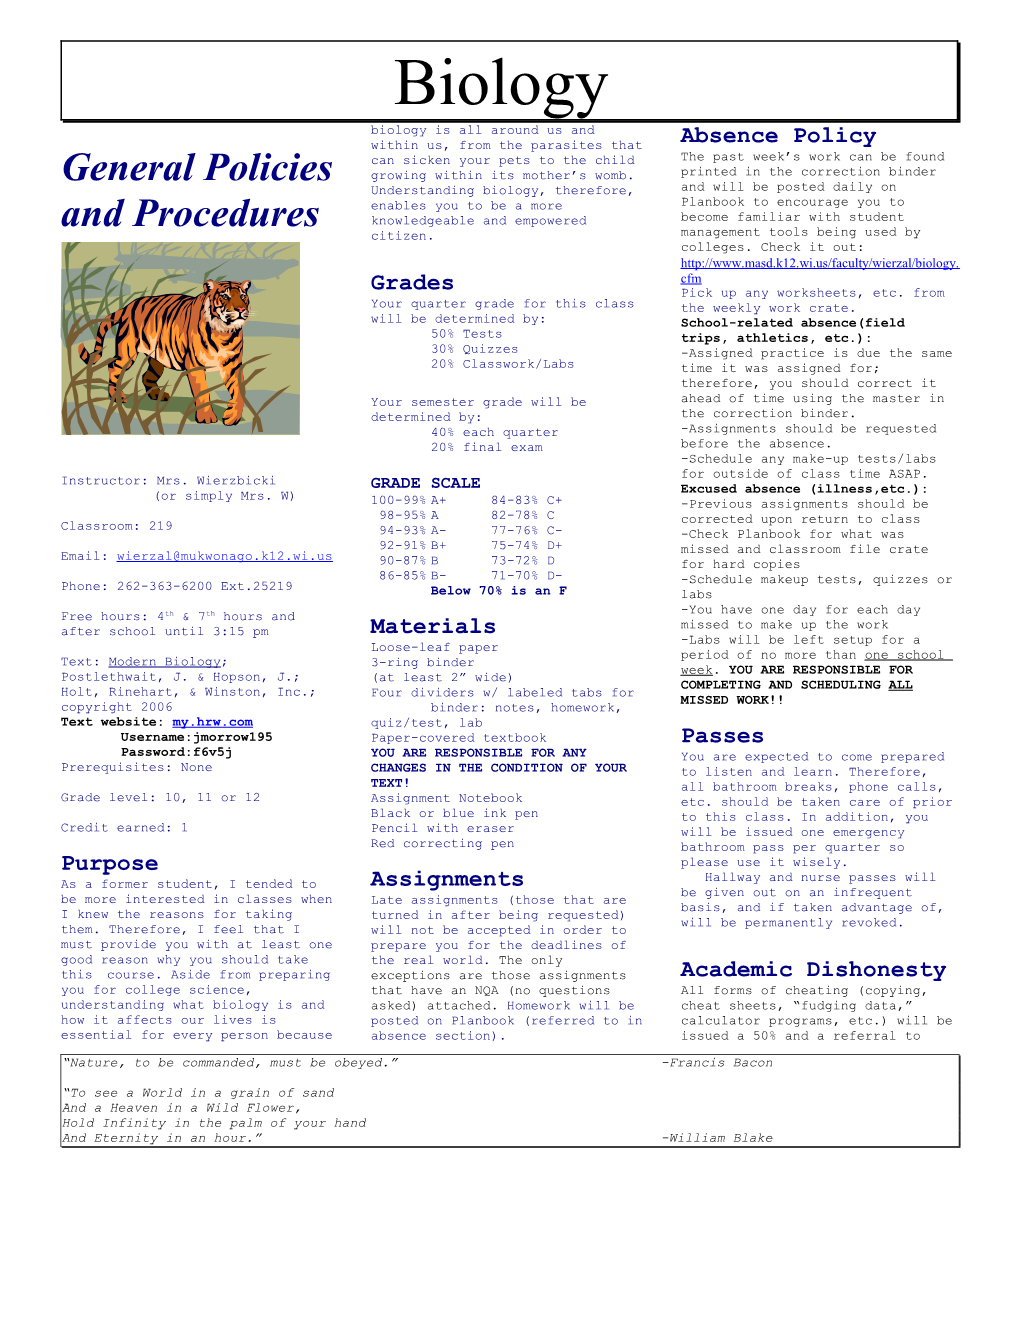 General Policies and Procedures